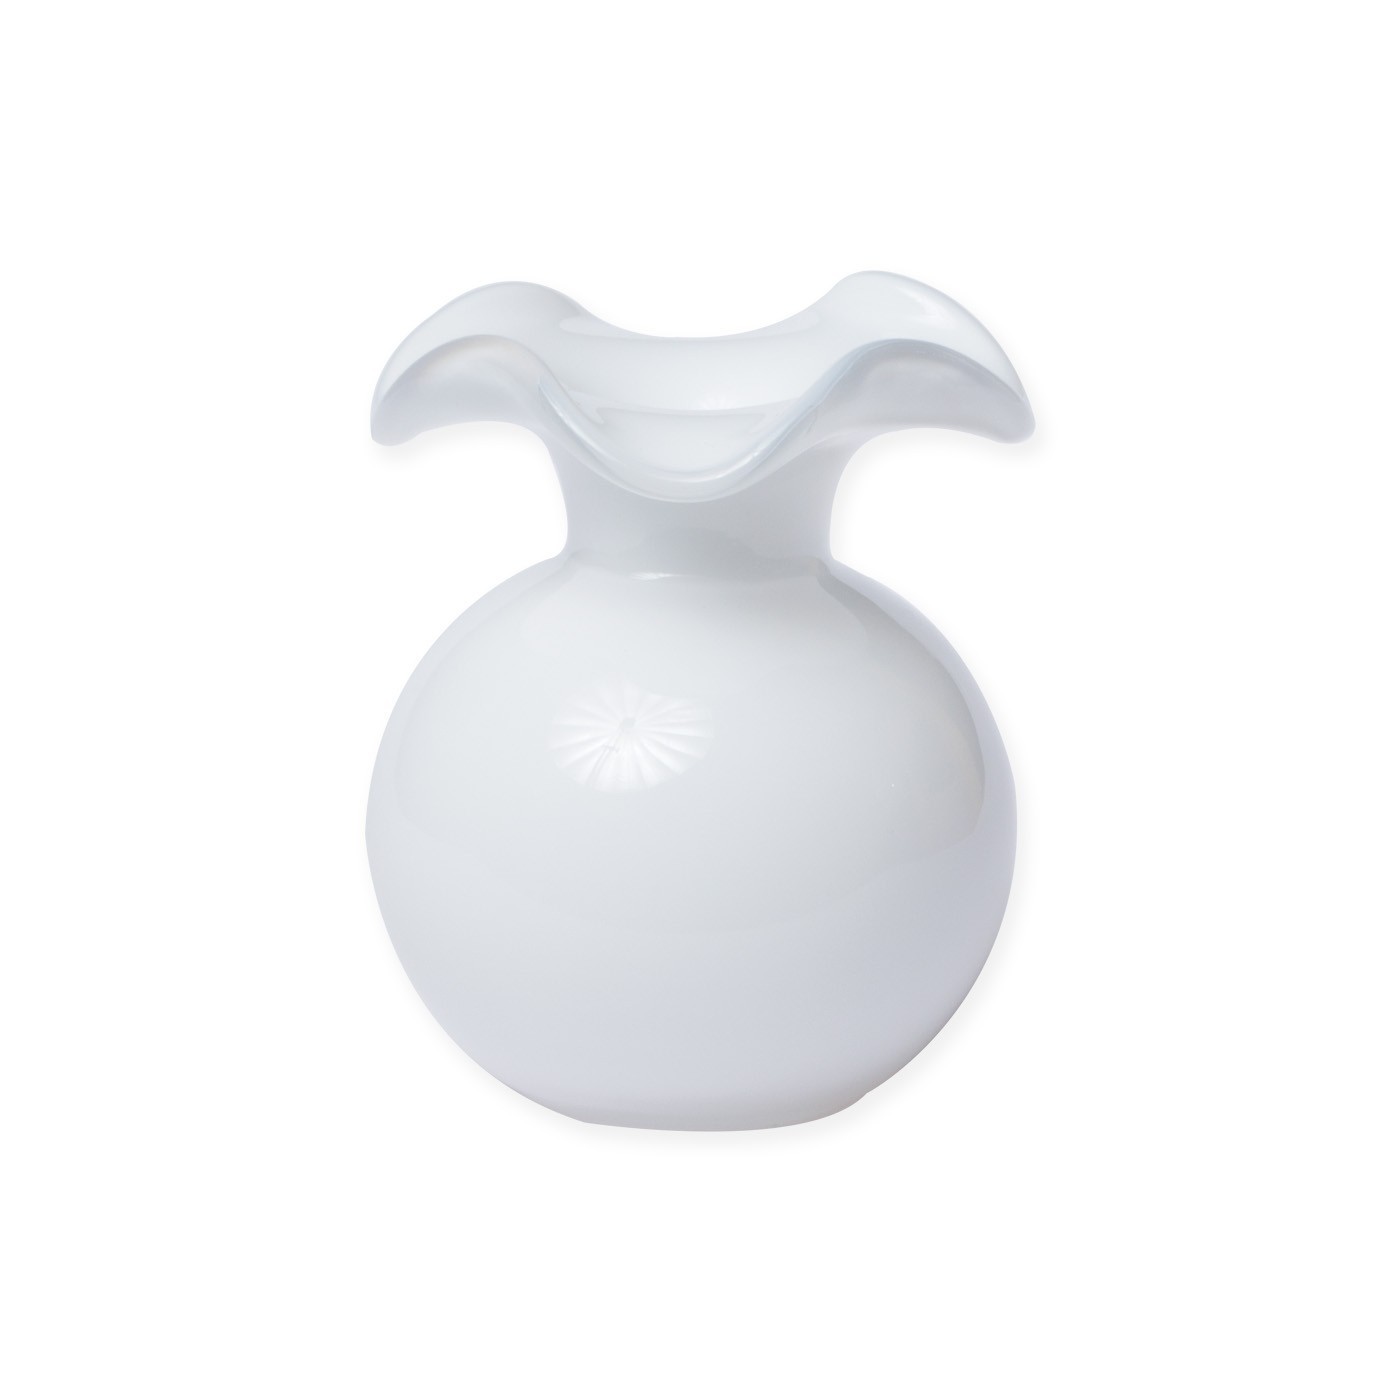 Vietri Hibiscus Glass White Bud Vase 5"D, 5.5"H